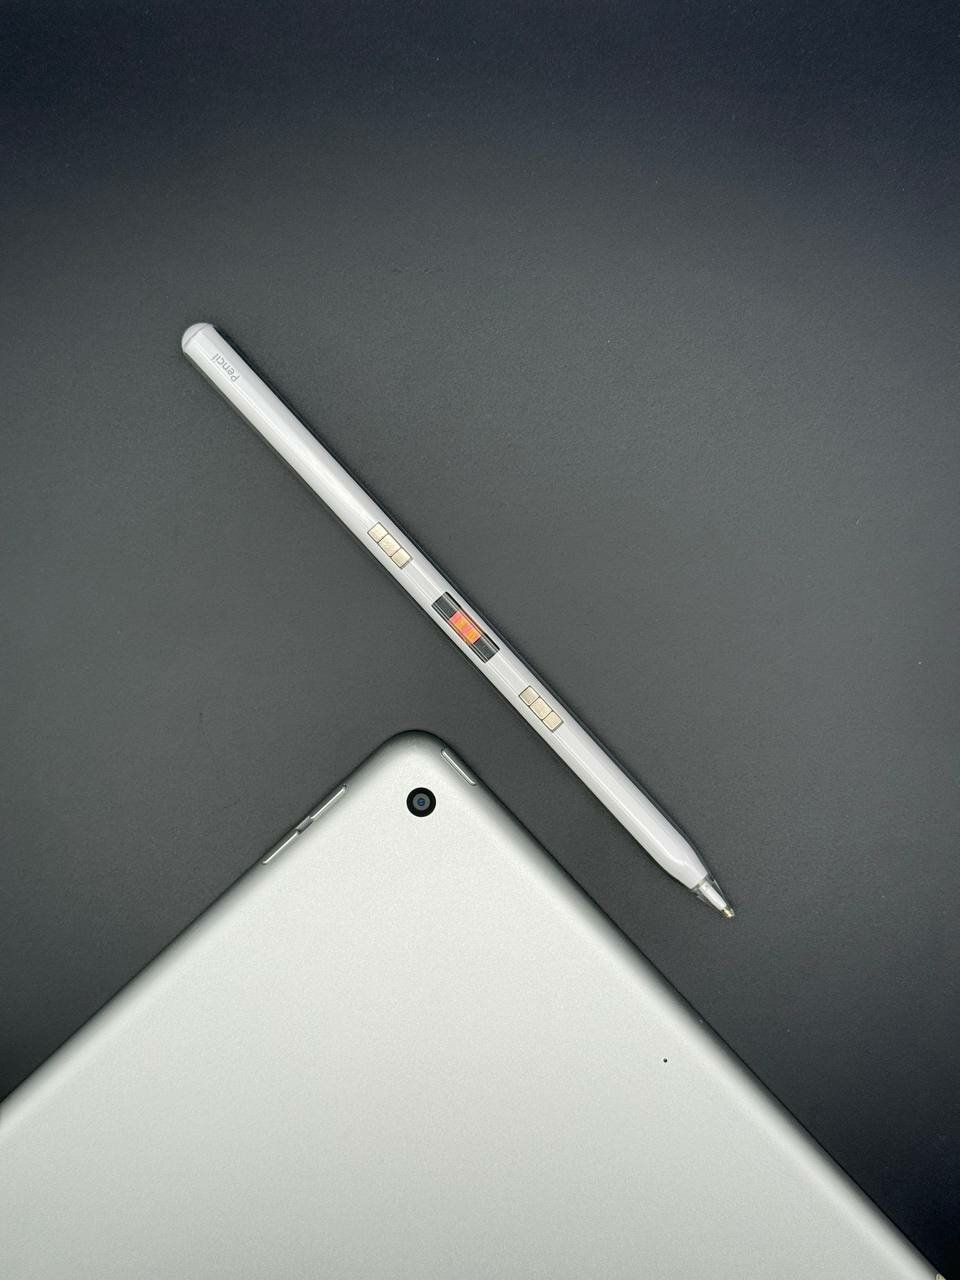 Стилус для iPad 2018, 2019, 2020, 2021, 2022 с магнитной зарядкой +2 наконечника + кейс, Pencil для планшета Apple с изменением толщины линии от угла наклона и защитой от прикосновения